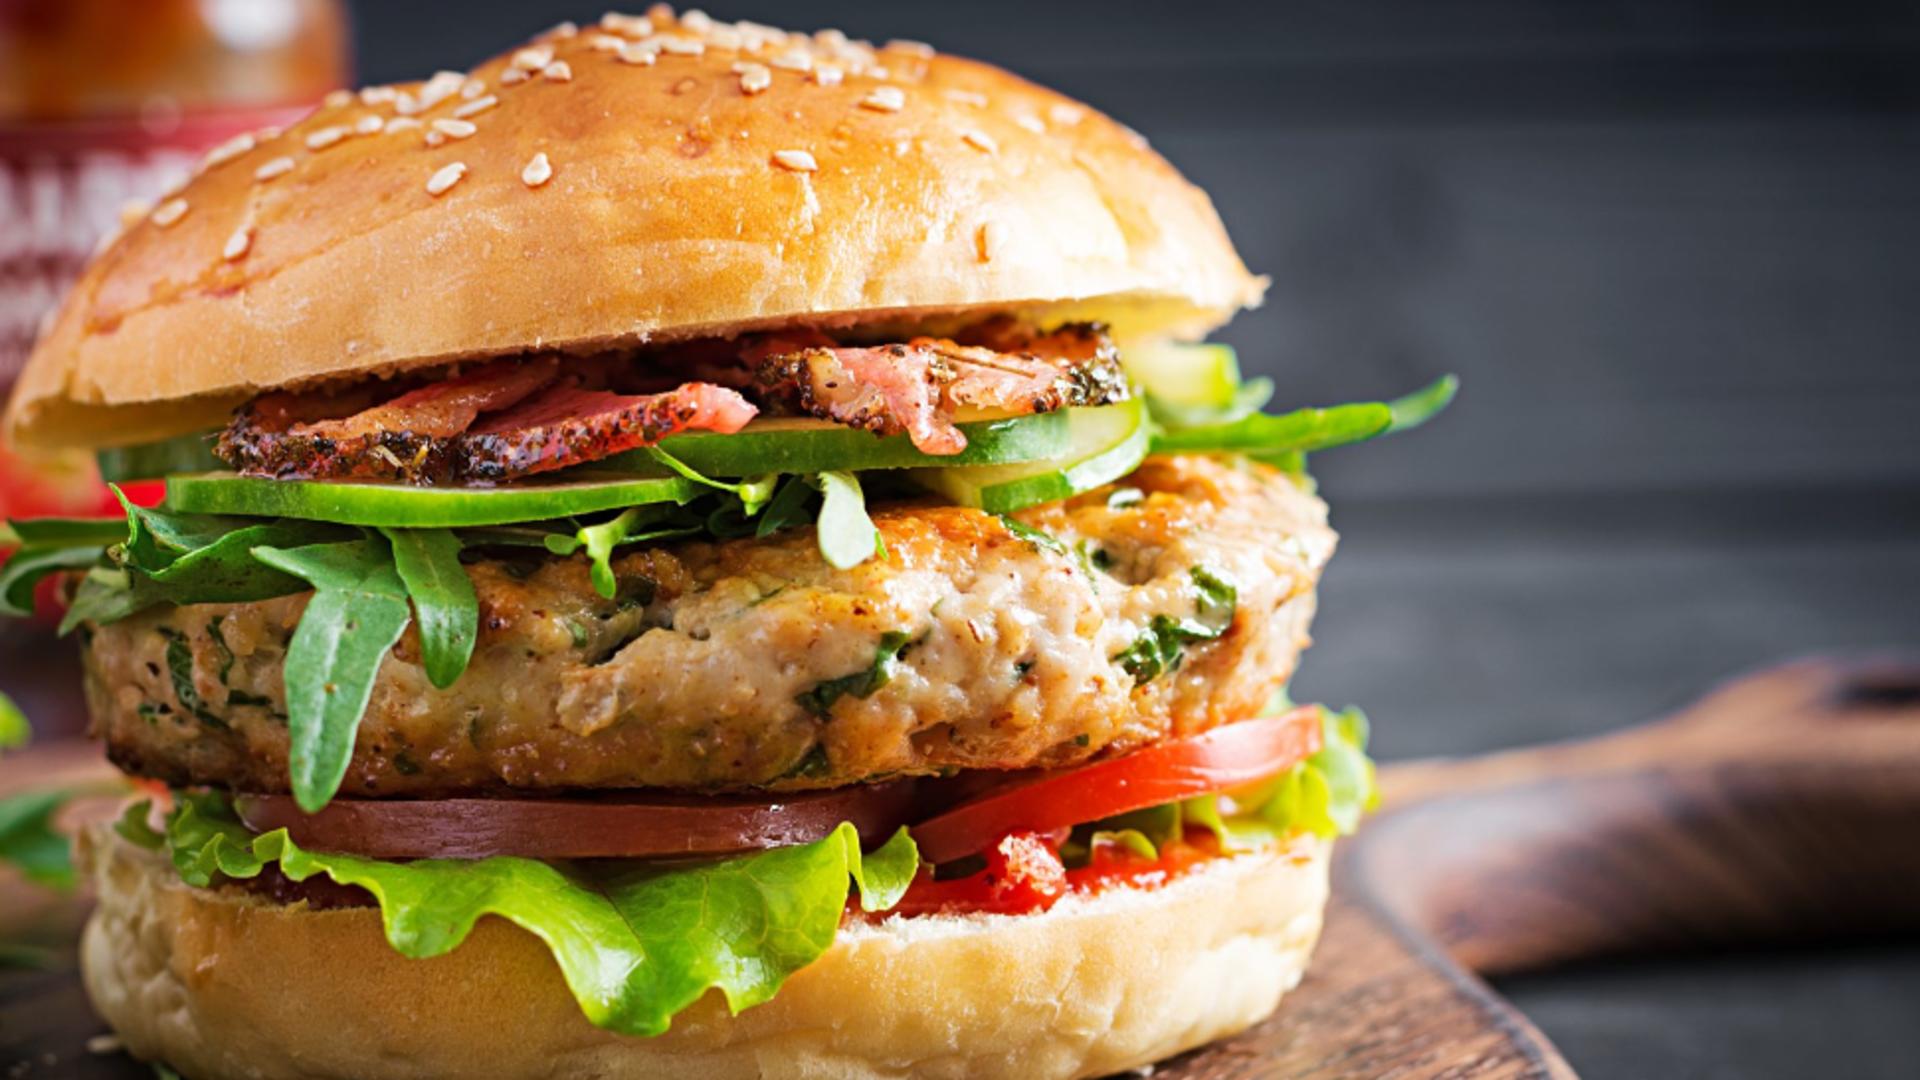 Rețeta clasică și simplă pentru hamburgerul de casă - Alternativa sănătoasă la fast food